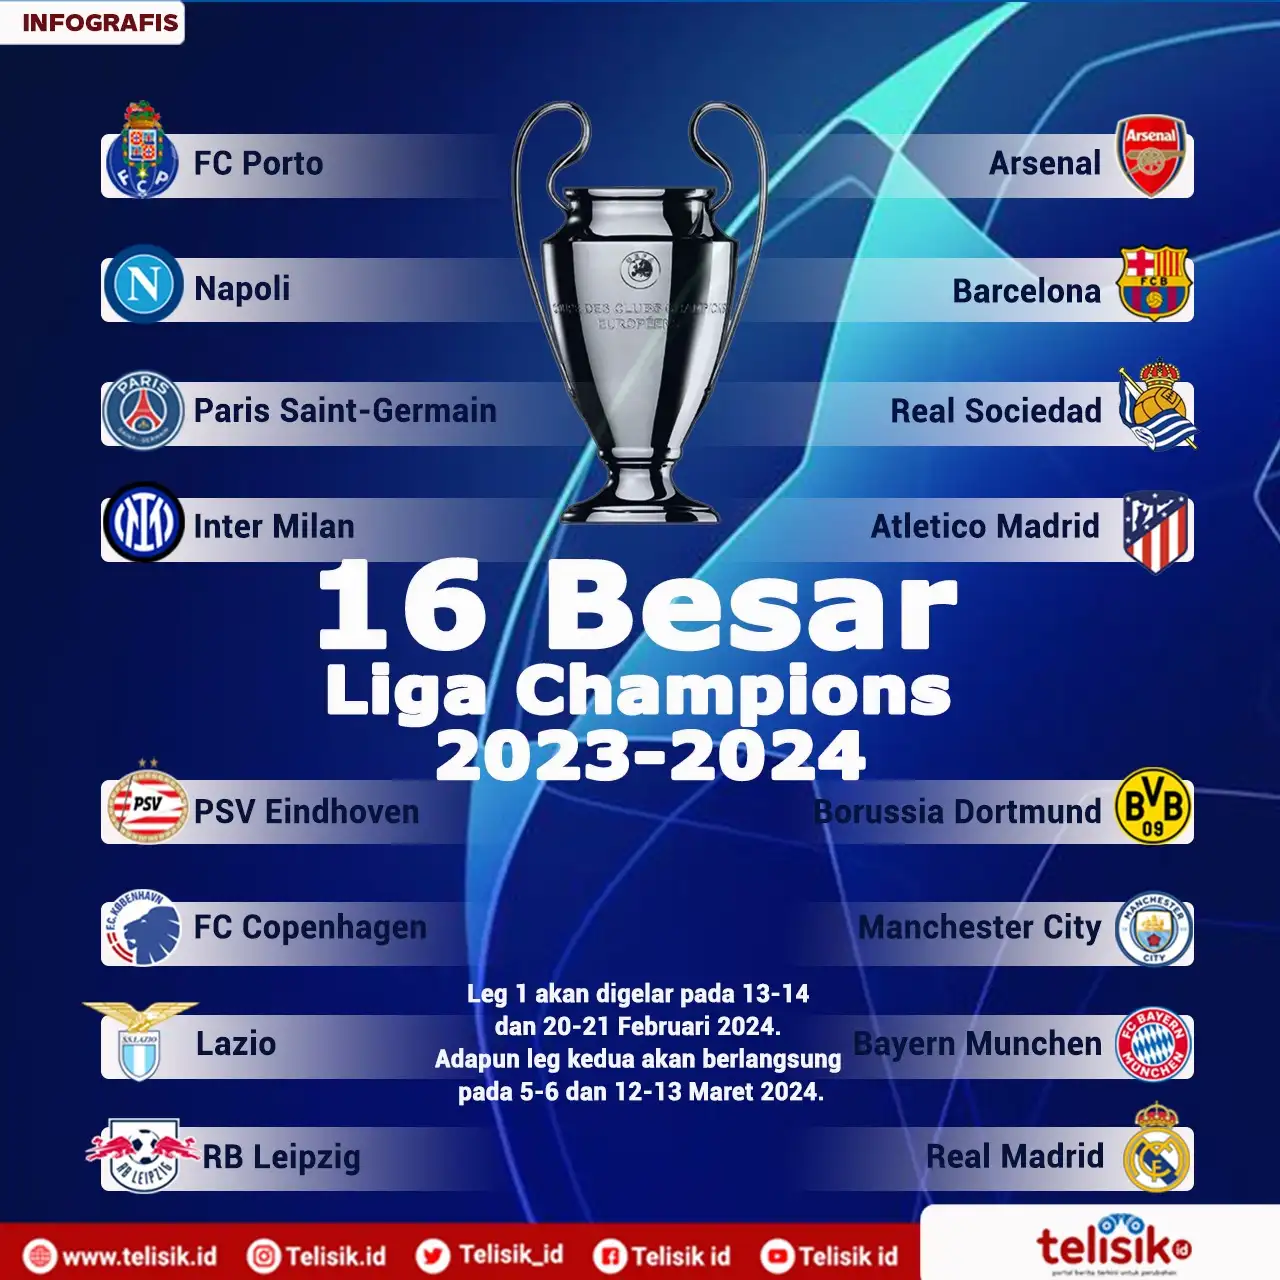 Infografis: Hasil Drawing 16 Besar Liga Champions 2023/2024